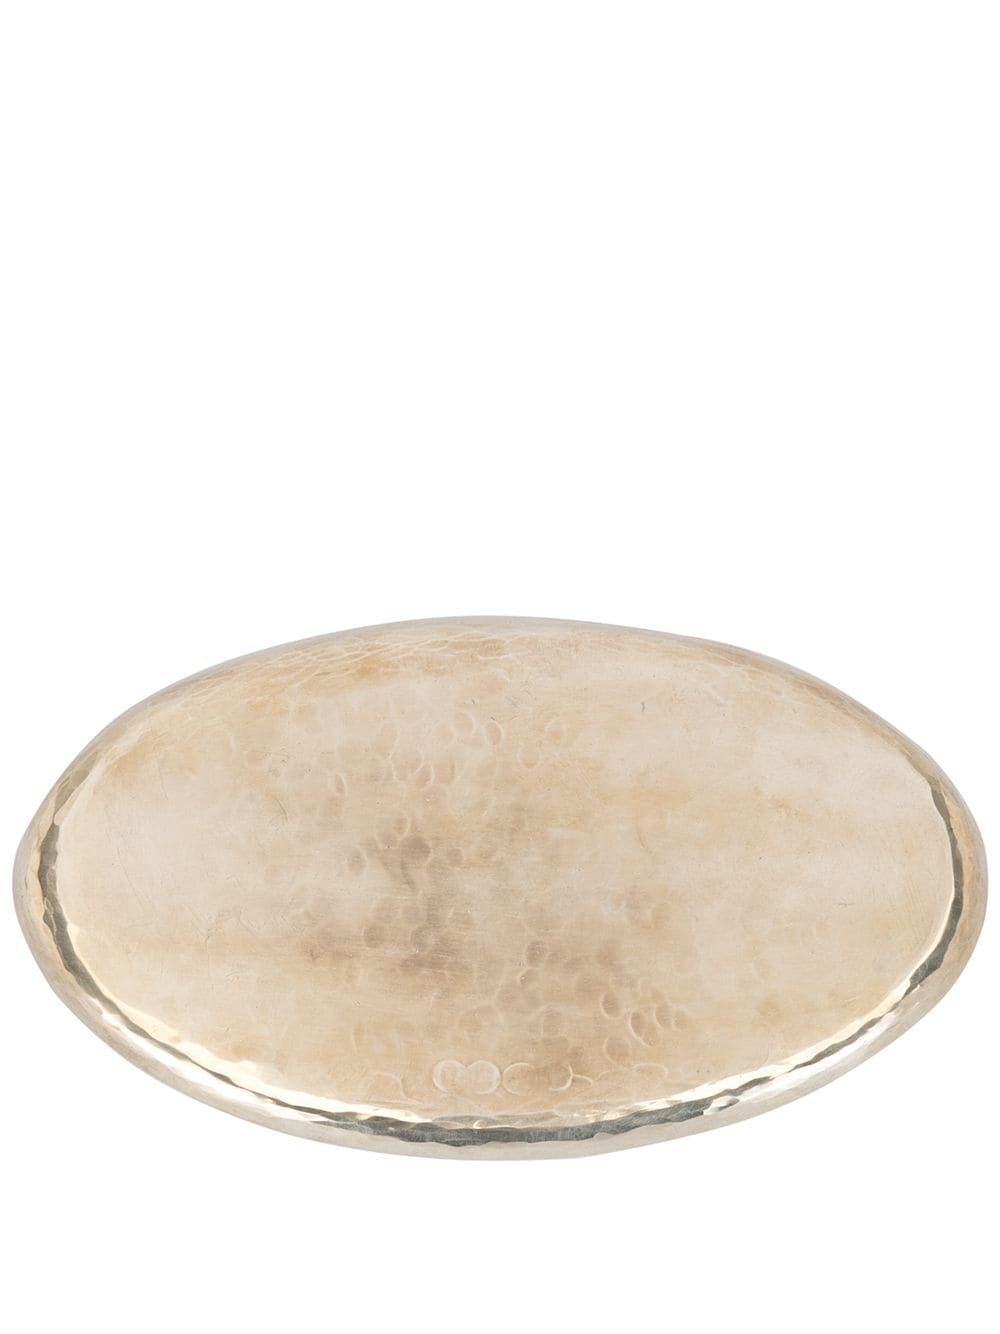 WERKSTATT:MÜNCHEN oval silver tray (19cm) - Gold von WERKSTATT:MÜNCHEN